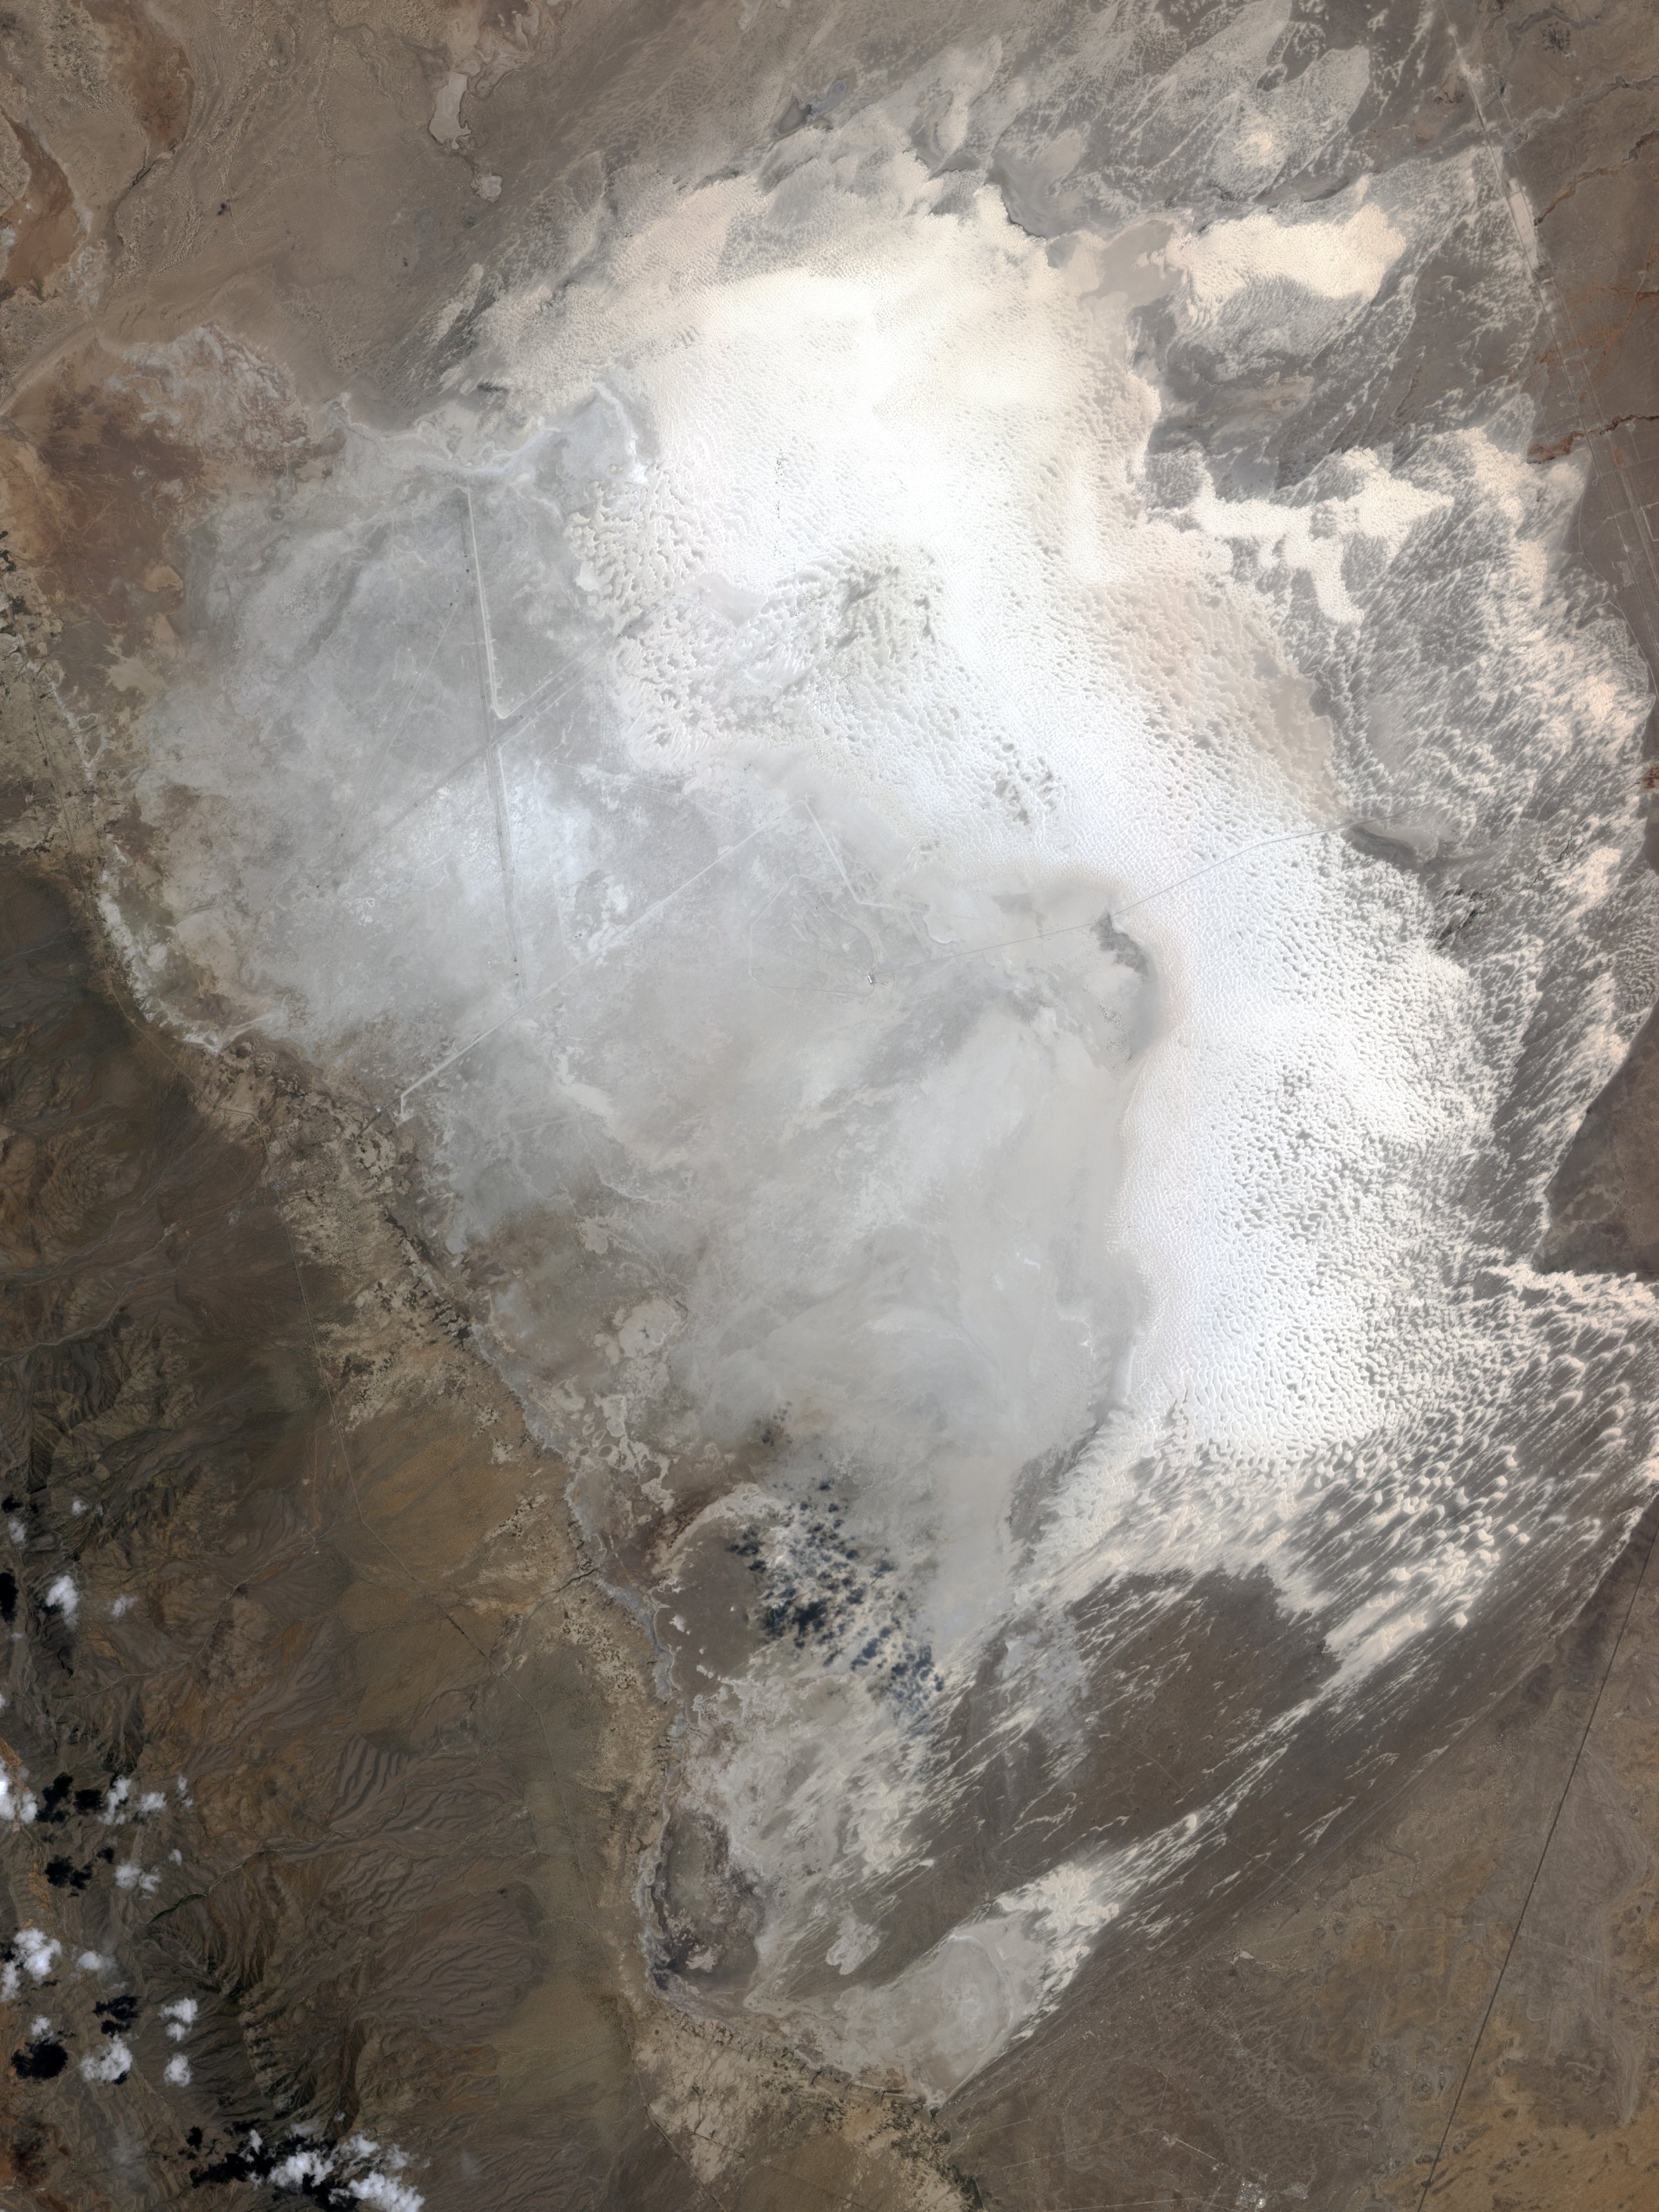 NASA - White Sands National Monument